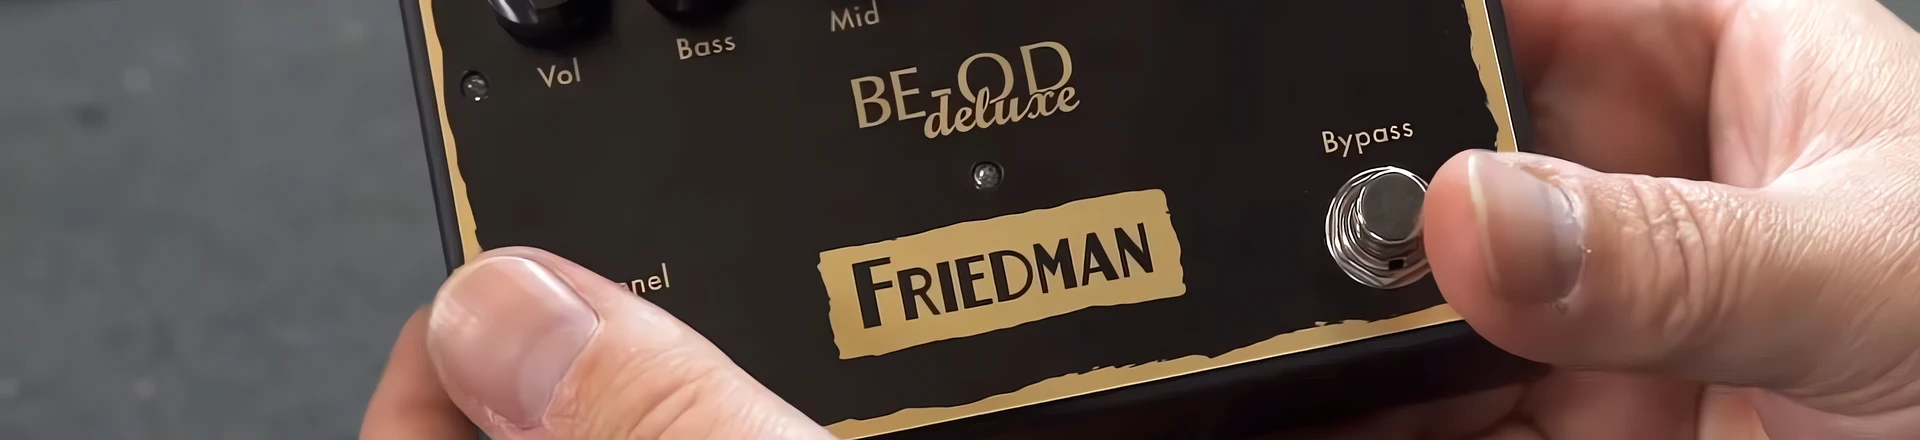 Friedman BE-OD Deluxe - rozbudowana wersja kultowego efektu